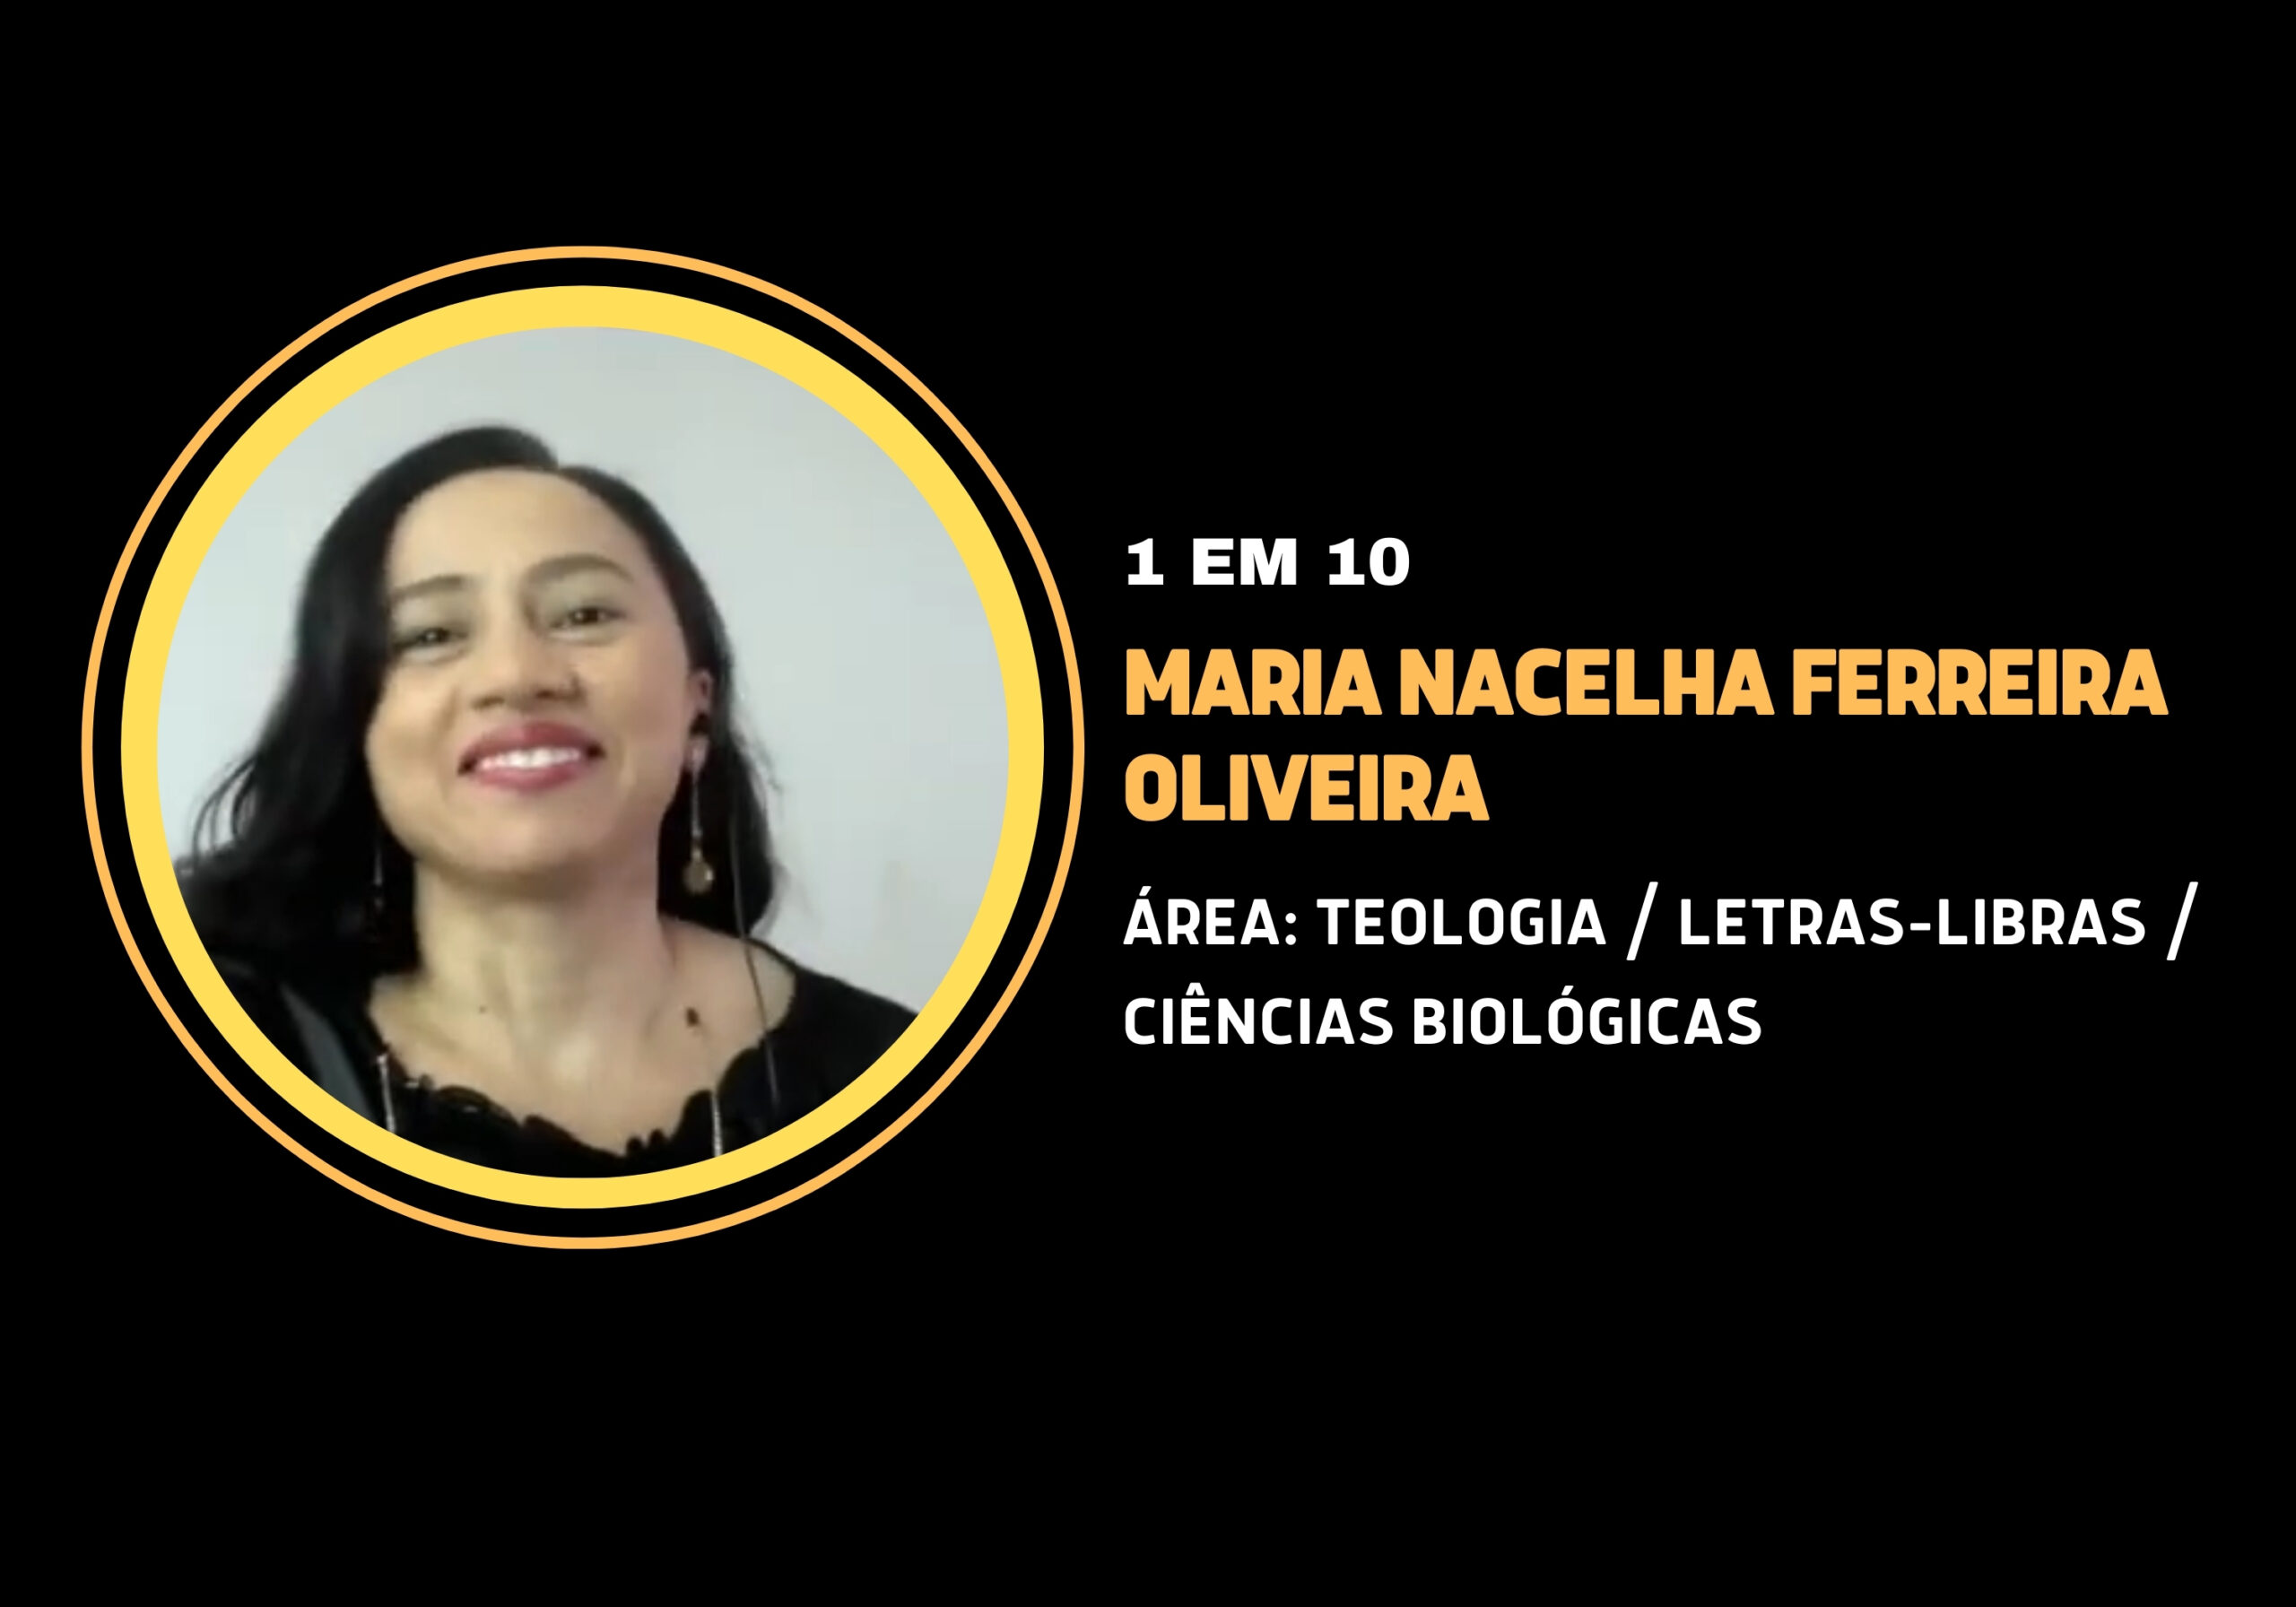 Maria Nacelha Ferreira Oliveira | 1 em 10